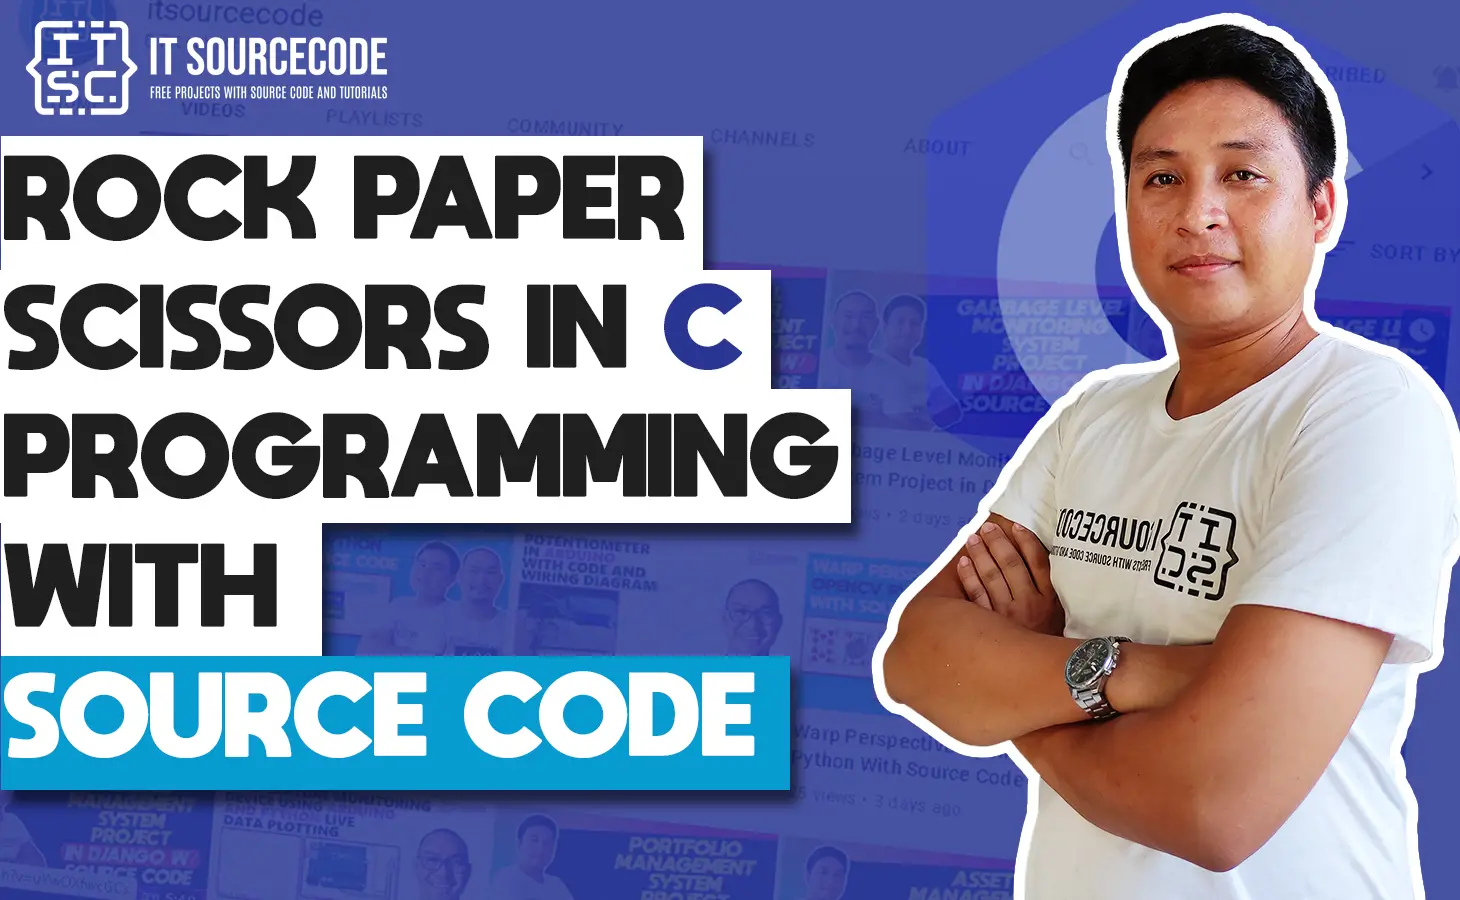 Rock Paper Scissors in C Programming with Source Code